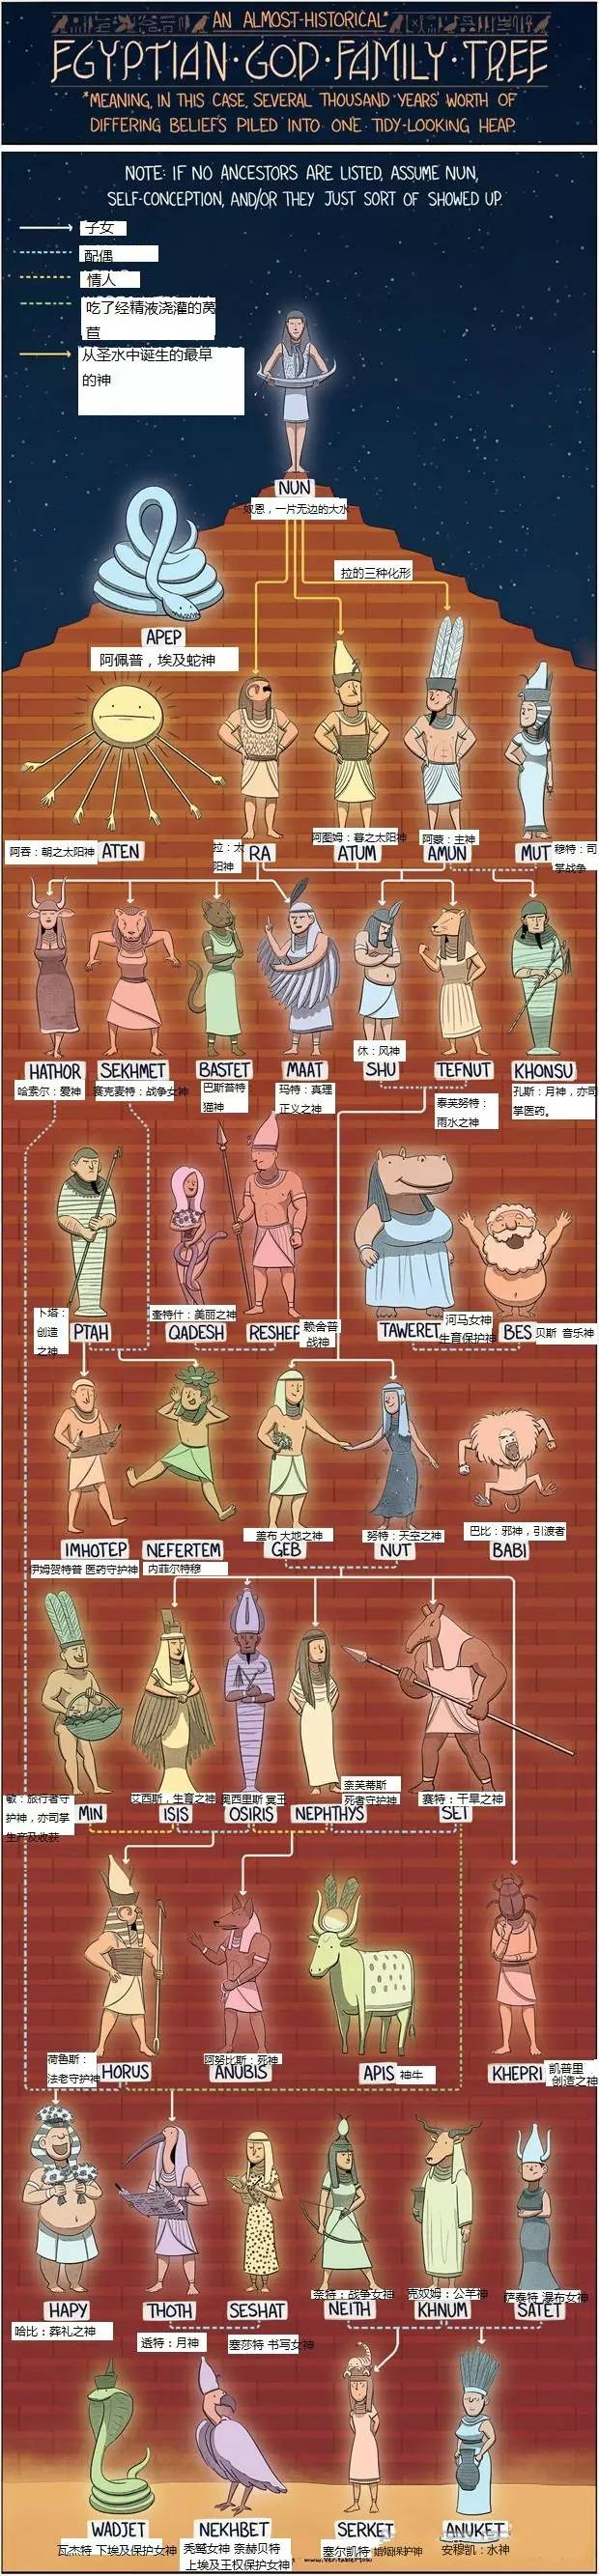 希腊罗马神话埃及神话北欧神话中国古代神话各类人物关系一览图